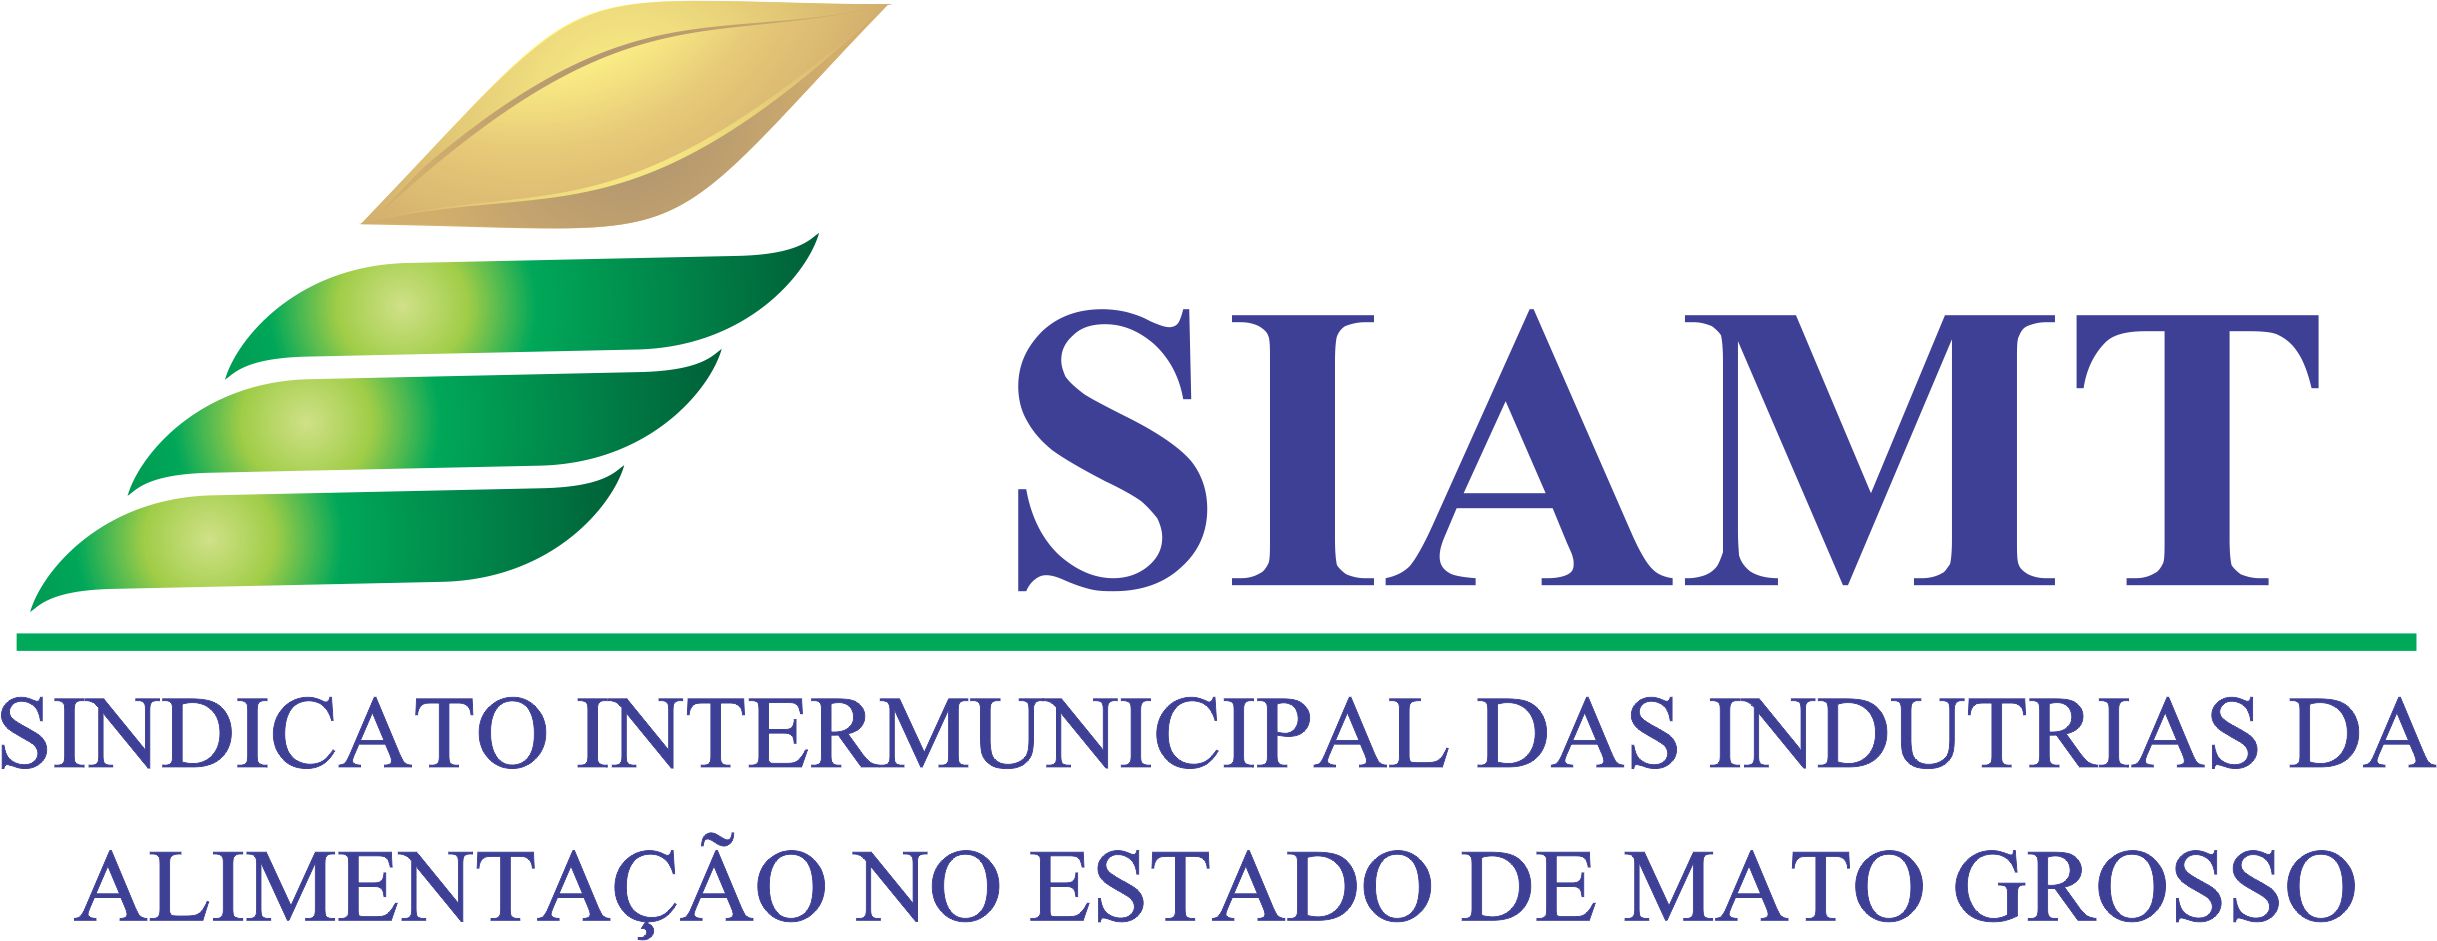 Sindicato Intermunicipal da Indstria da Alimentao do Estado de Mato Grosso